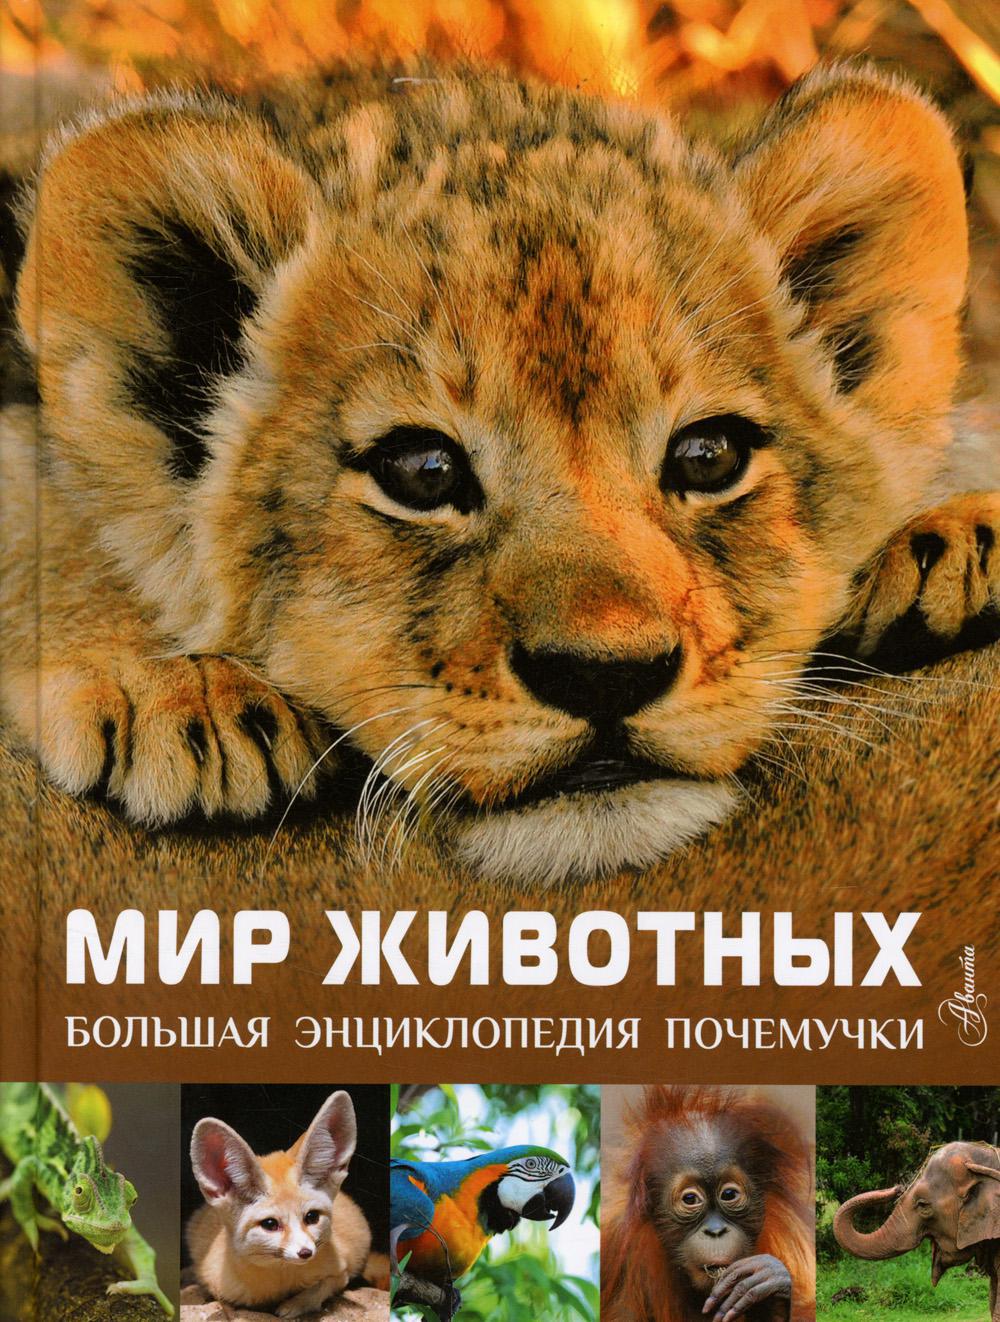 Мир животных. Большая энциклопедия почемучки